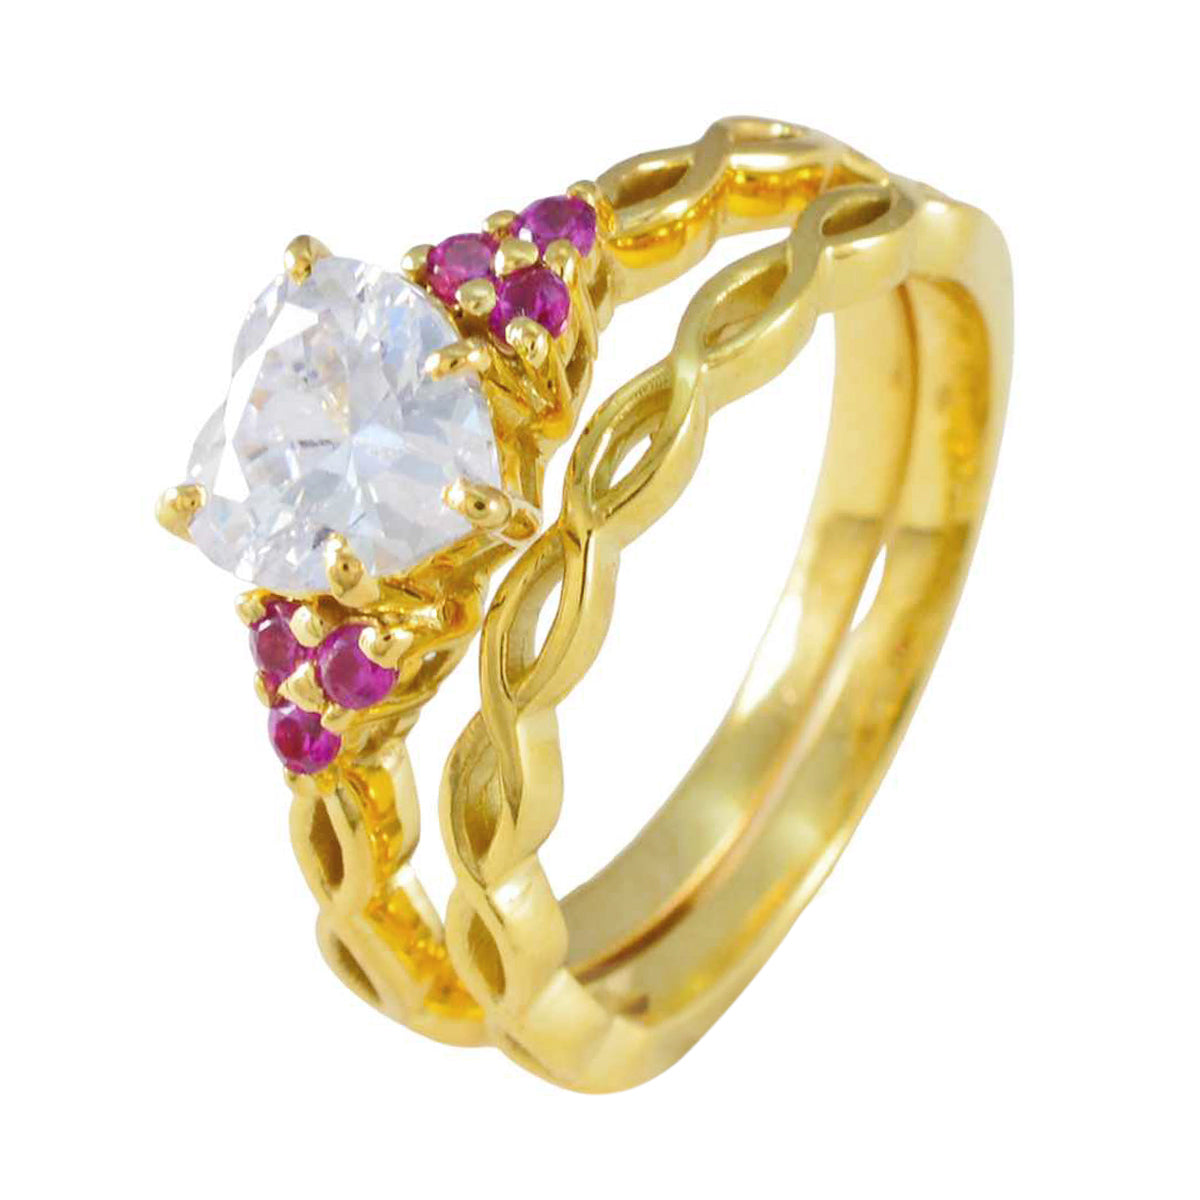 riyo komplett silverring med gul guldplätering rubin cz sten hjärta form uttag inställning mode smycken halloween ring